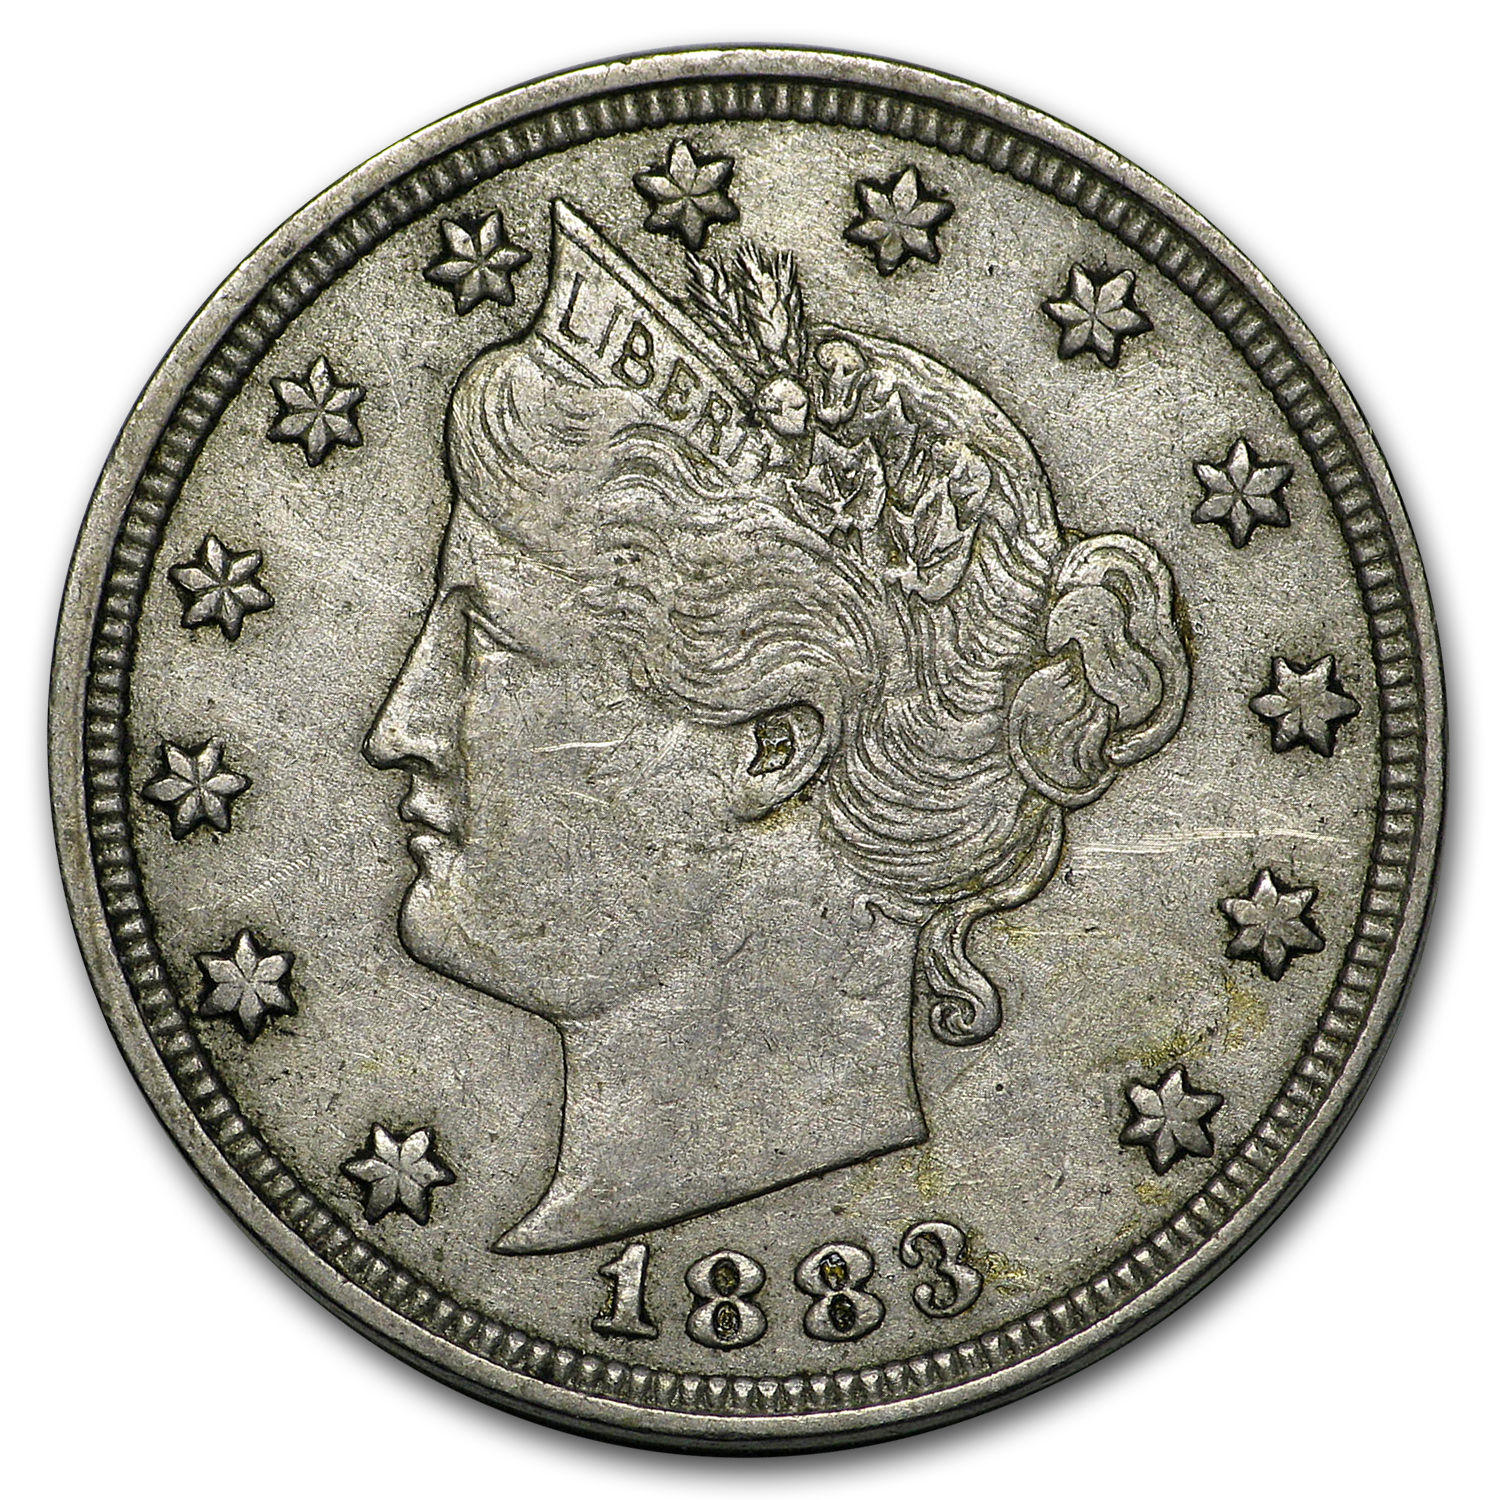 Buy 1883 Liberty Head V Nickel No Cents XF